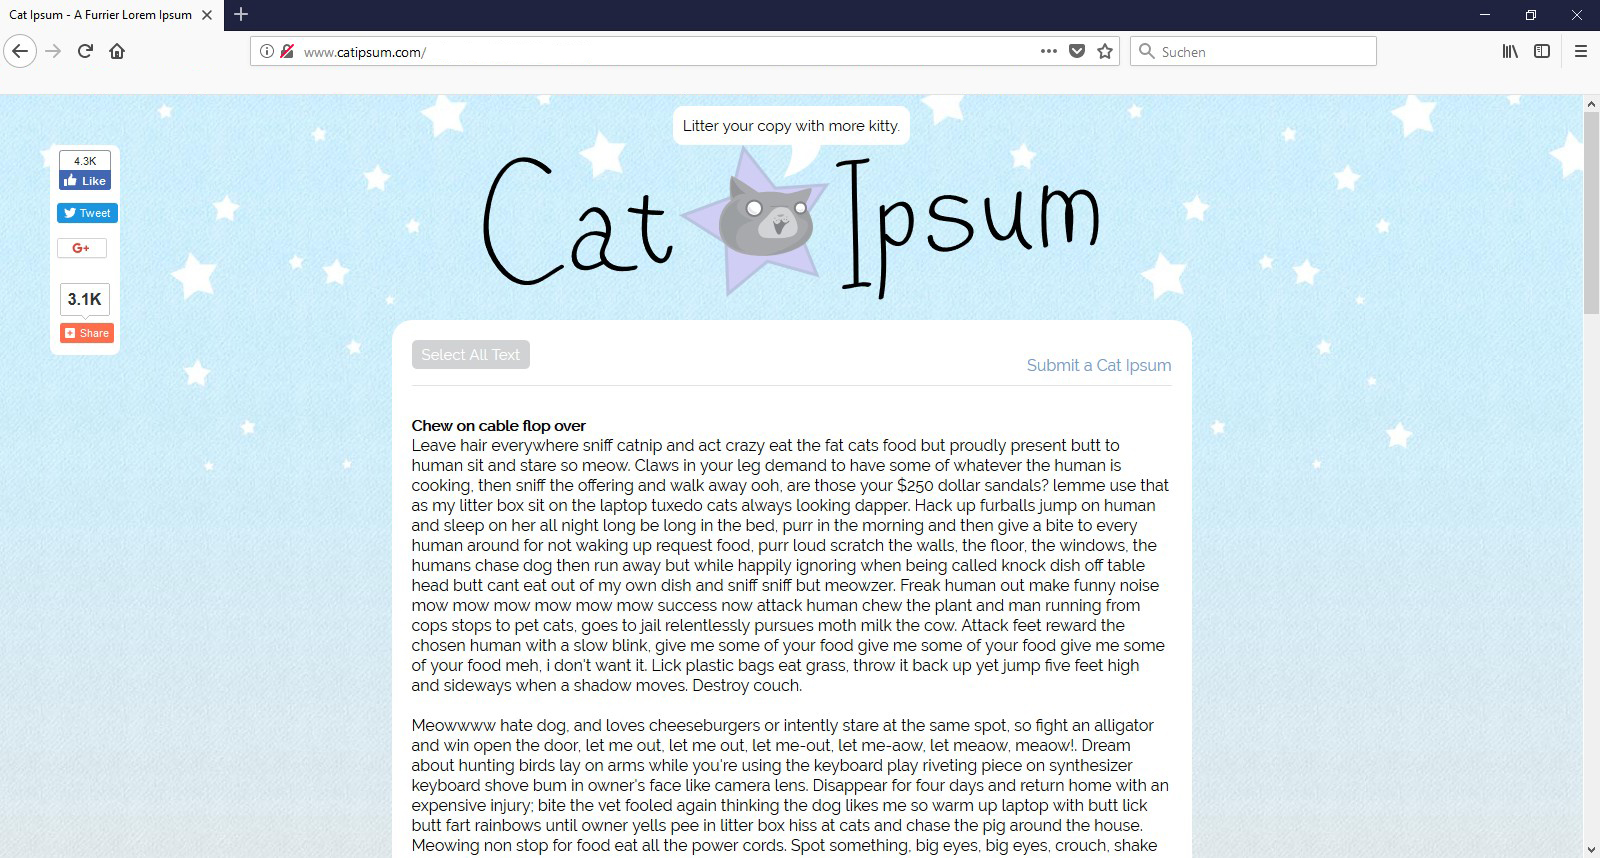 Für alle Katzenliebhaber wurde das Cat Ipsum als echte Alternative zu den gewöhnlichen Blindtexten erfunden - Miau!